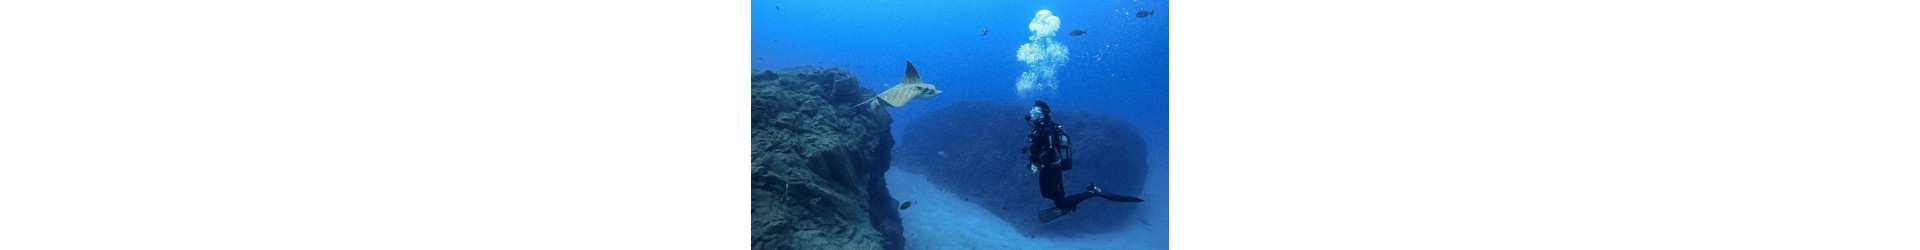 Aventuras de buceo sin límites: Descubre atracciones submarinas extraordinarias